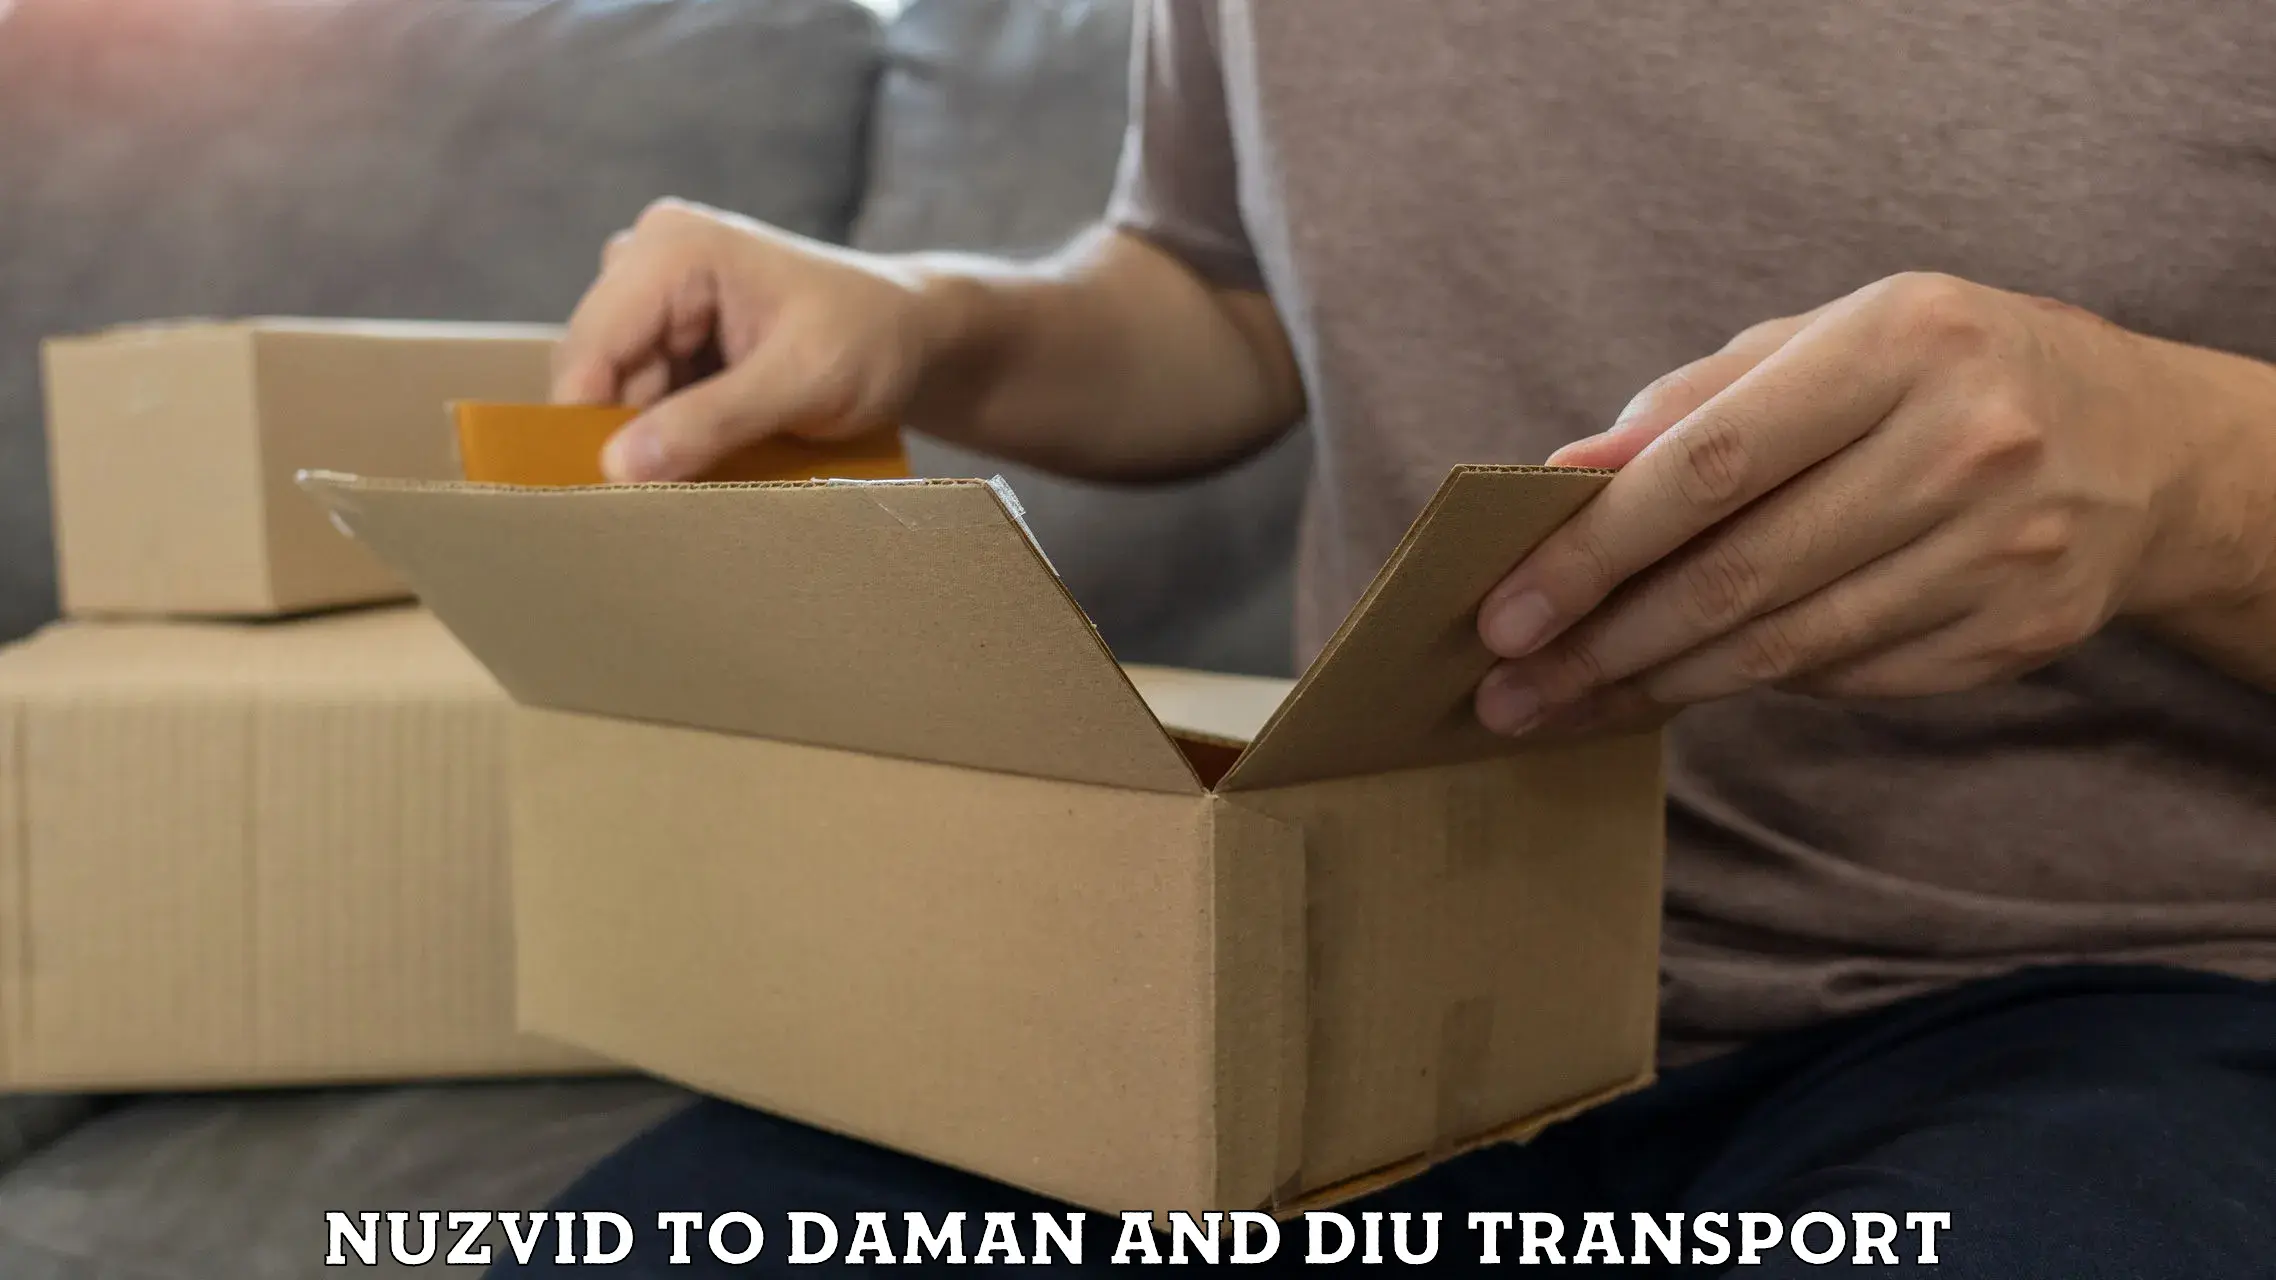 Online transport service Nuzvid to Daman